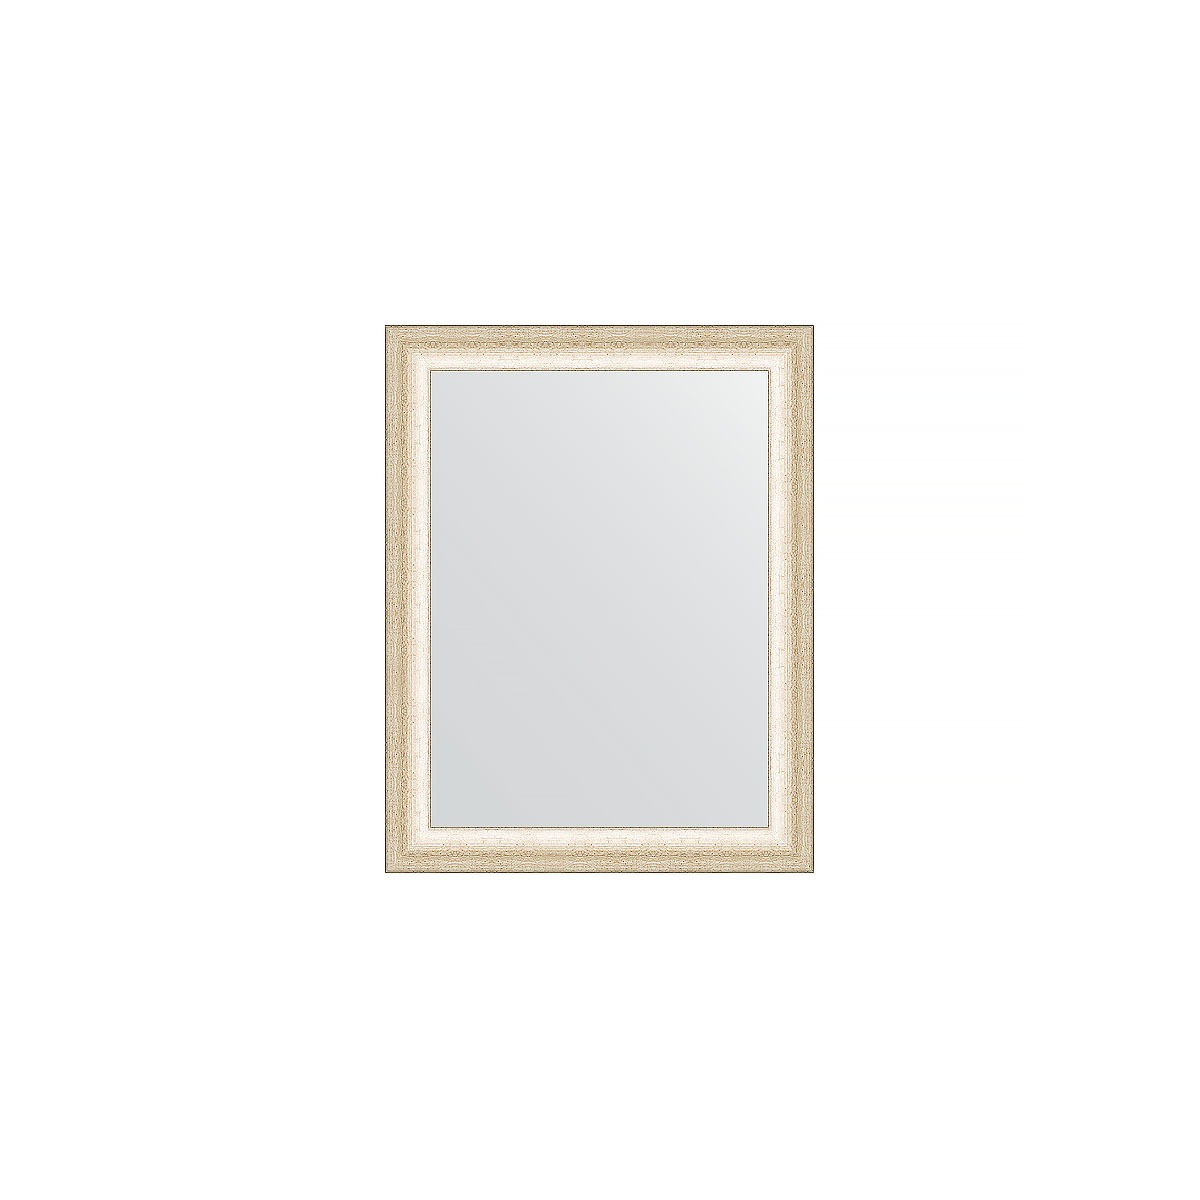 Зеркало в багетной раме Evoform состаренное серебро 37 мм 36х46 см зеркало в багетной раме evoform травленое серебро 59 мм 54х104 см